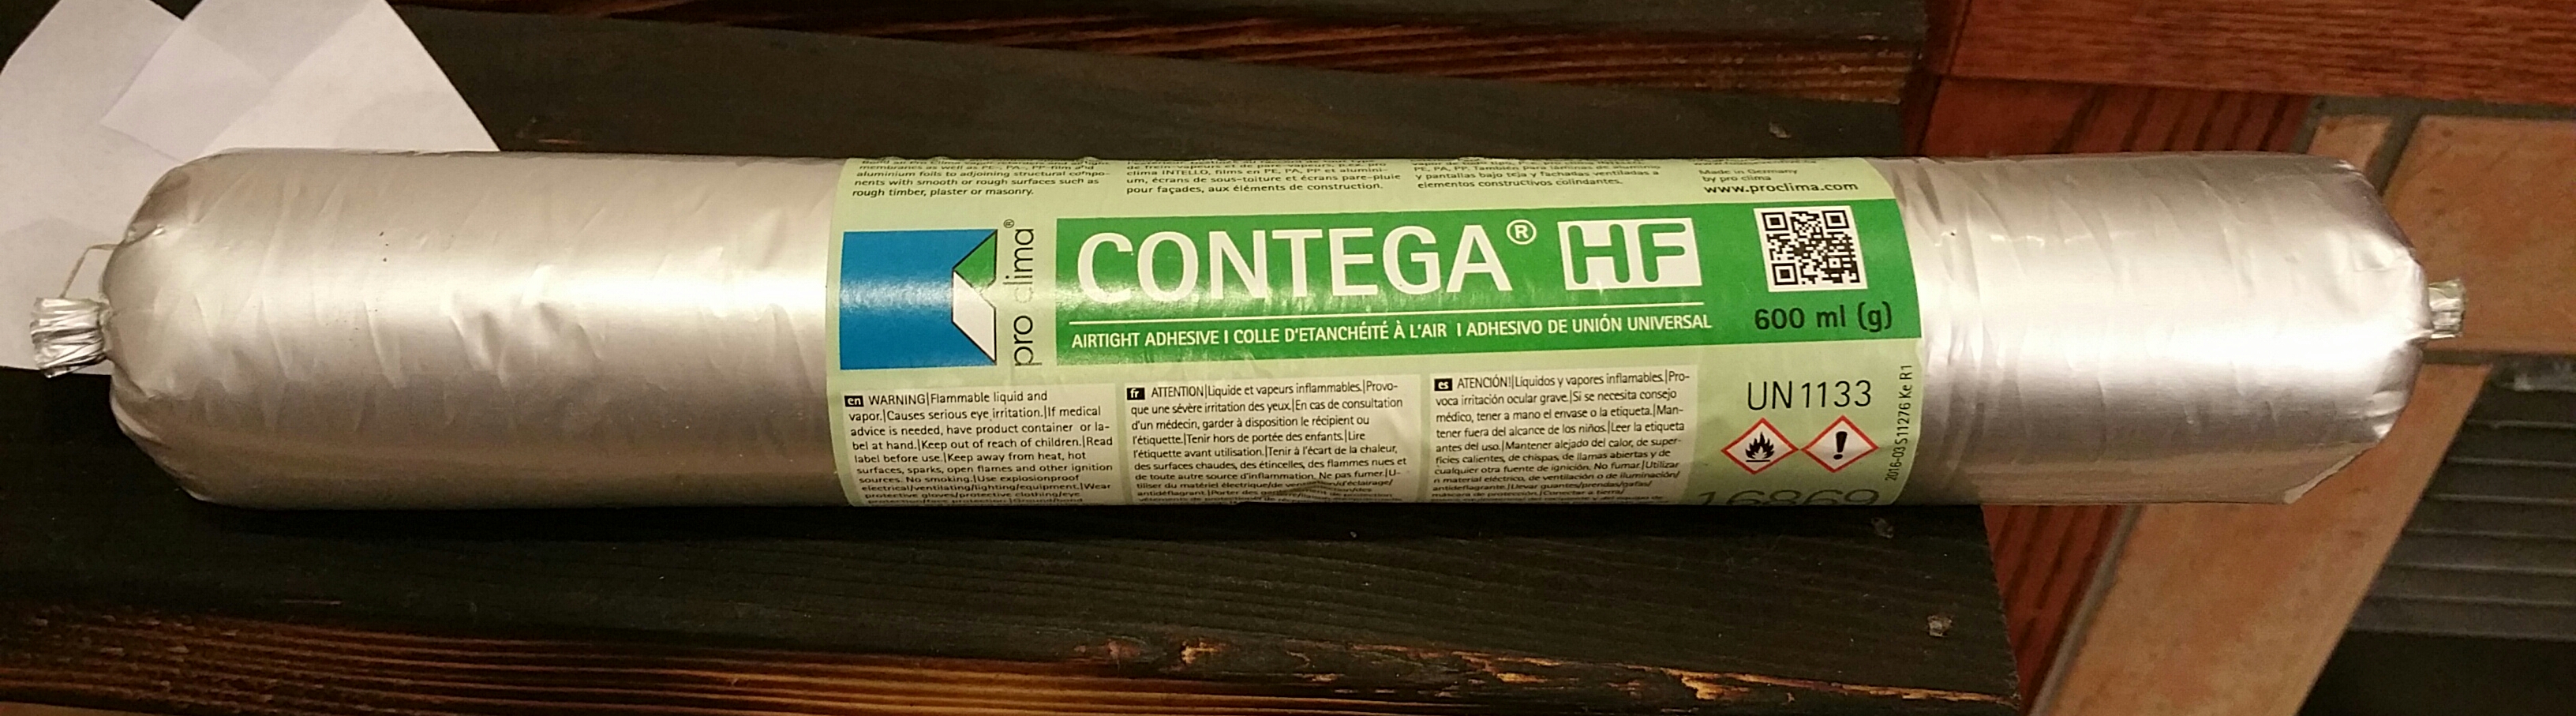 contega-hf-sealant-in-20-oz-sausage